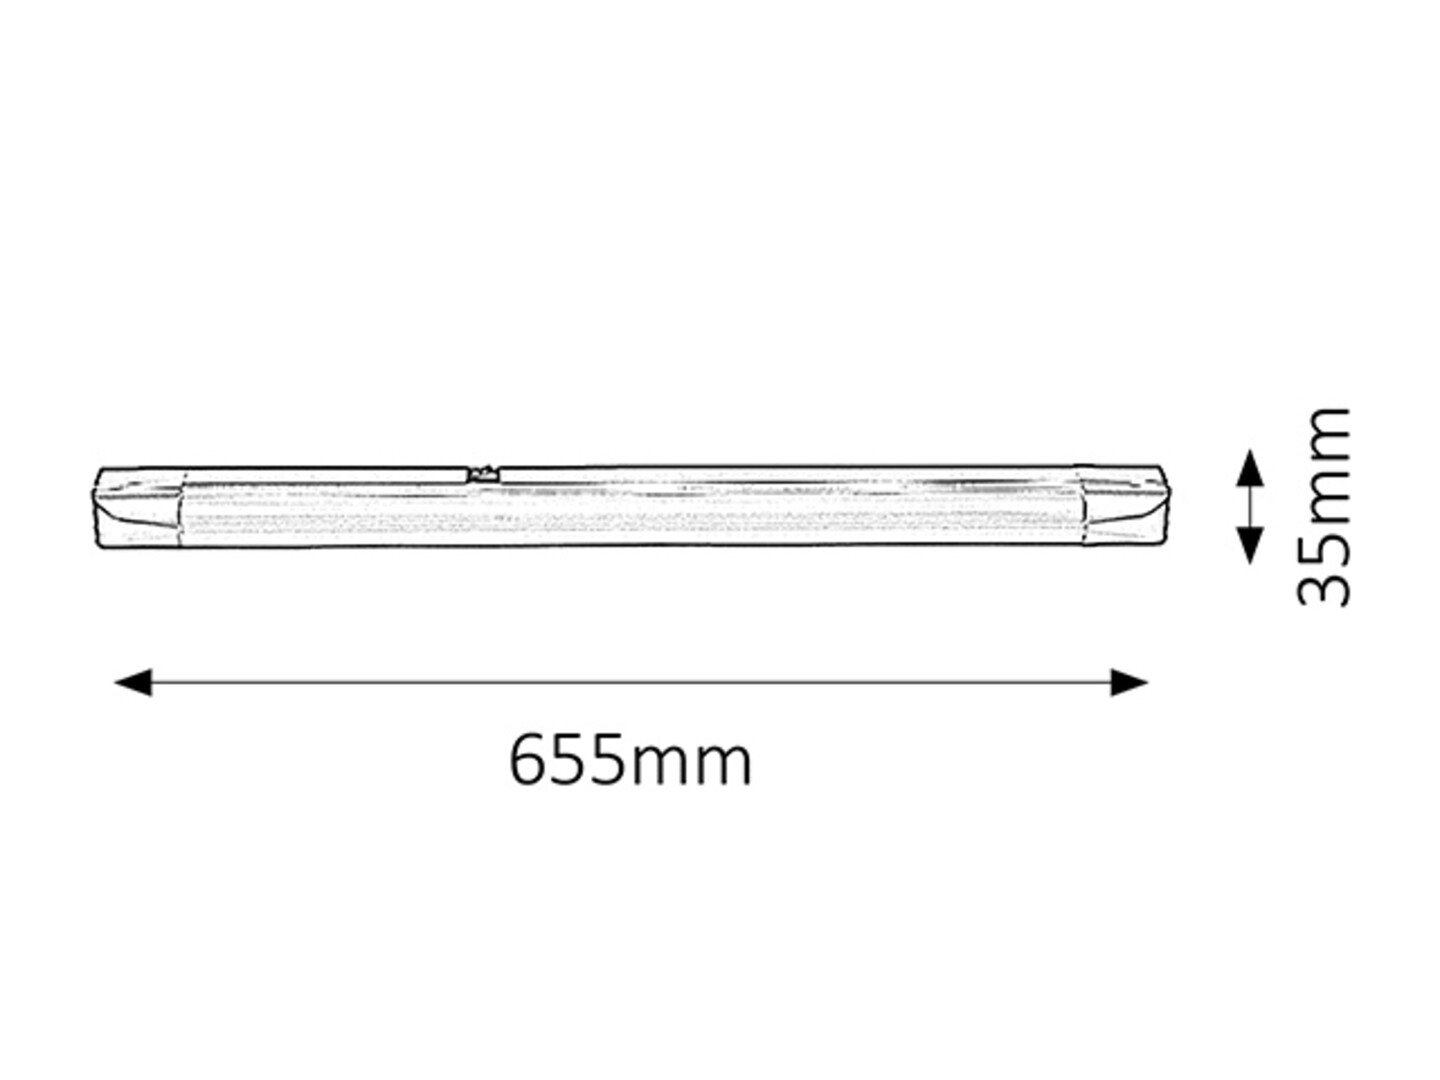 Arbeitsleuchte Band light 2308, G13, 18W, 2700K, 1350lm, Metall, silber, warmweiß, 65,5cm